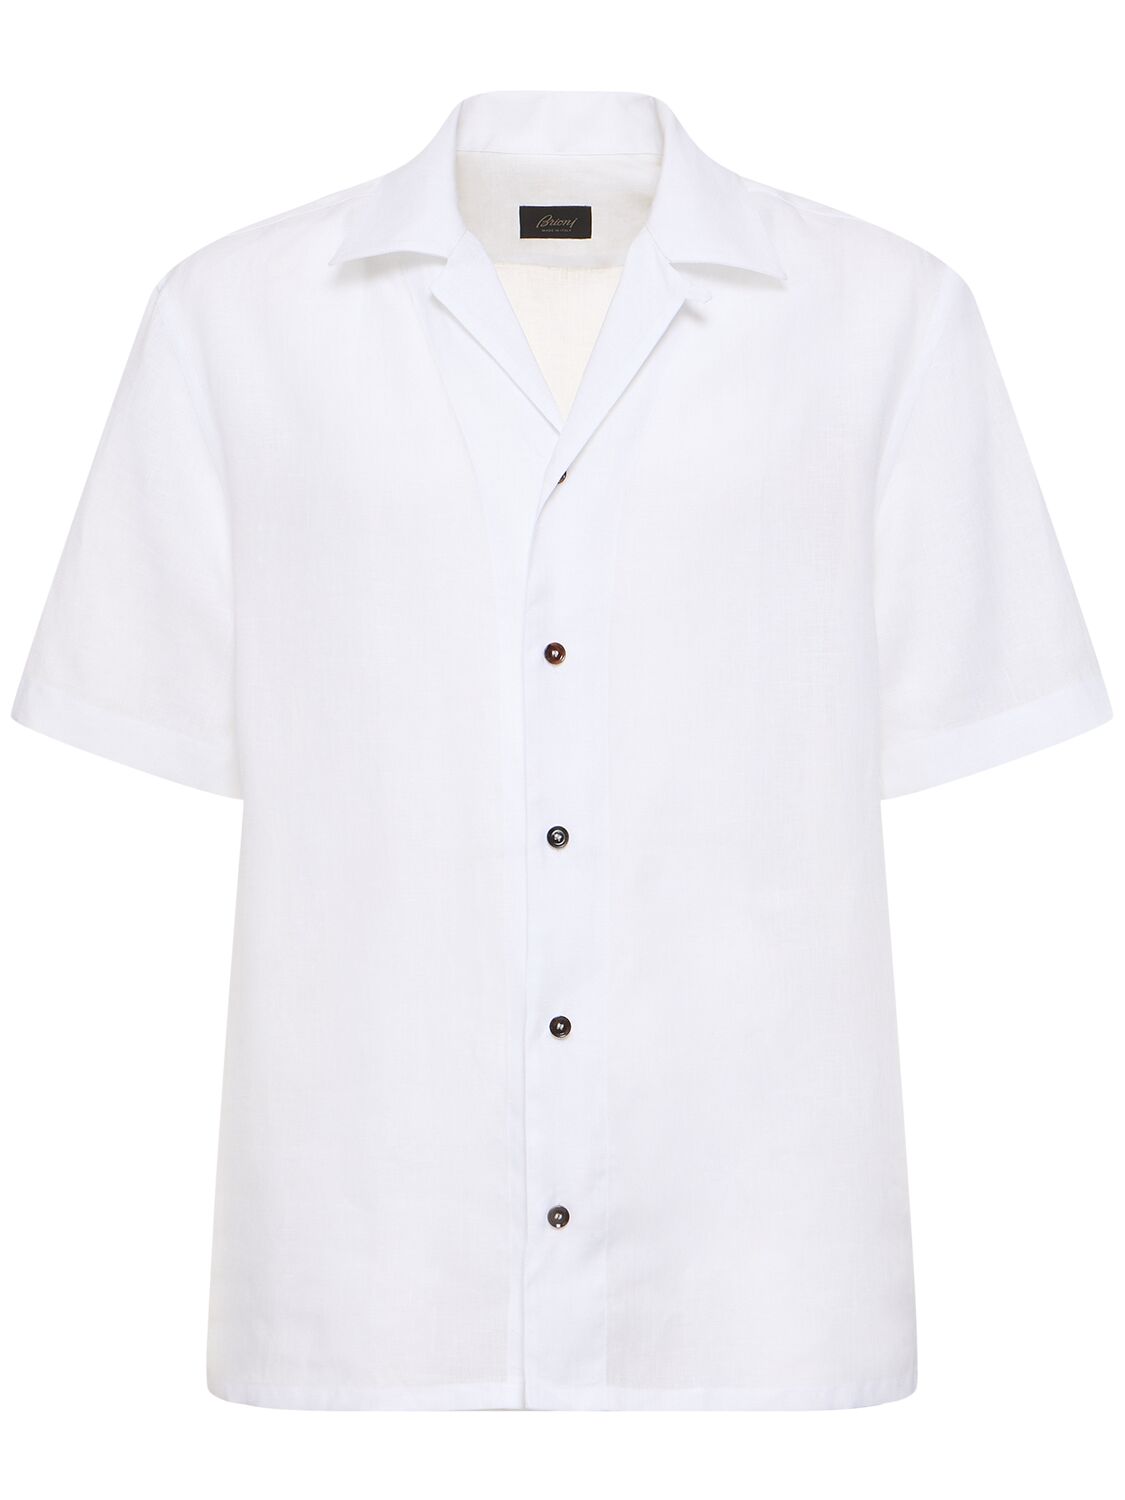 Image of Short Sleeve Linen Shirt